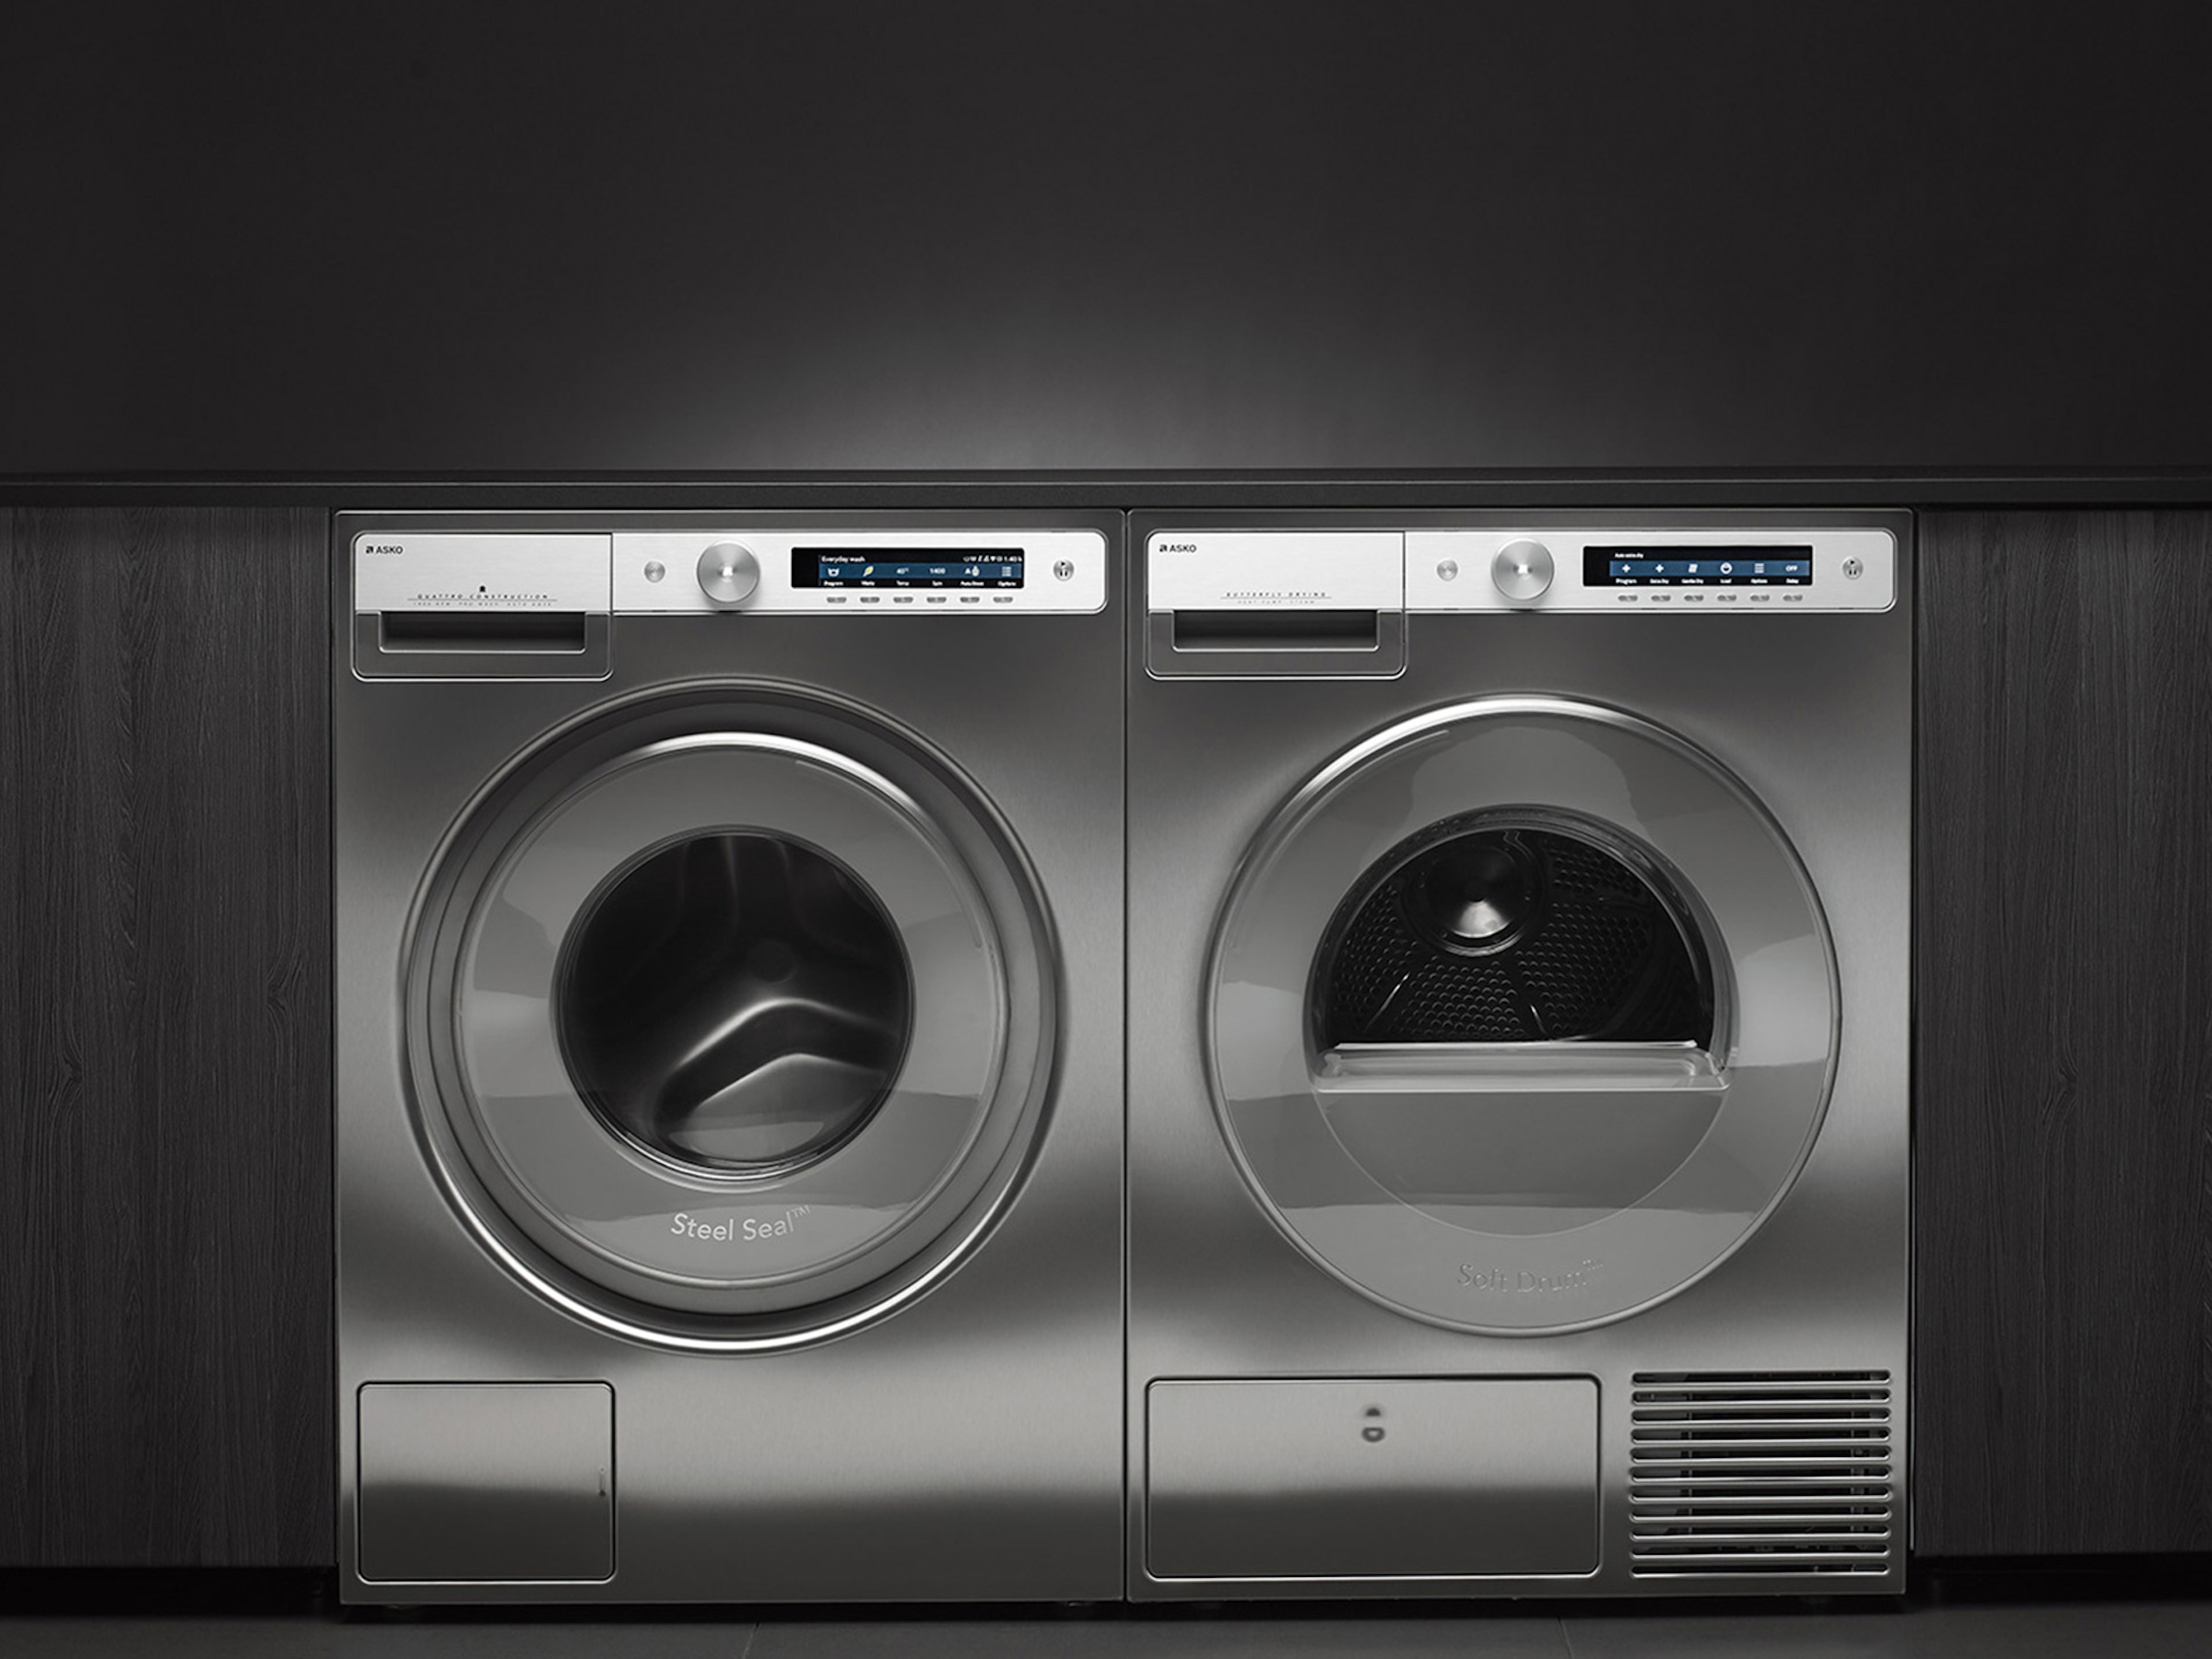 ASKO-Laundry-Washing-machines-Style.jpg